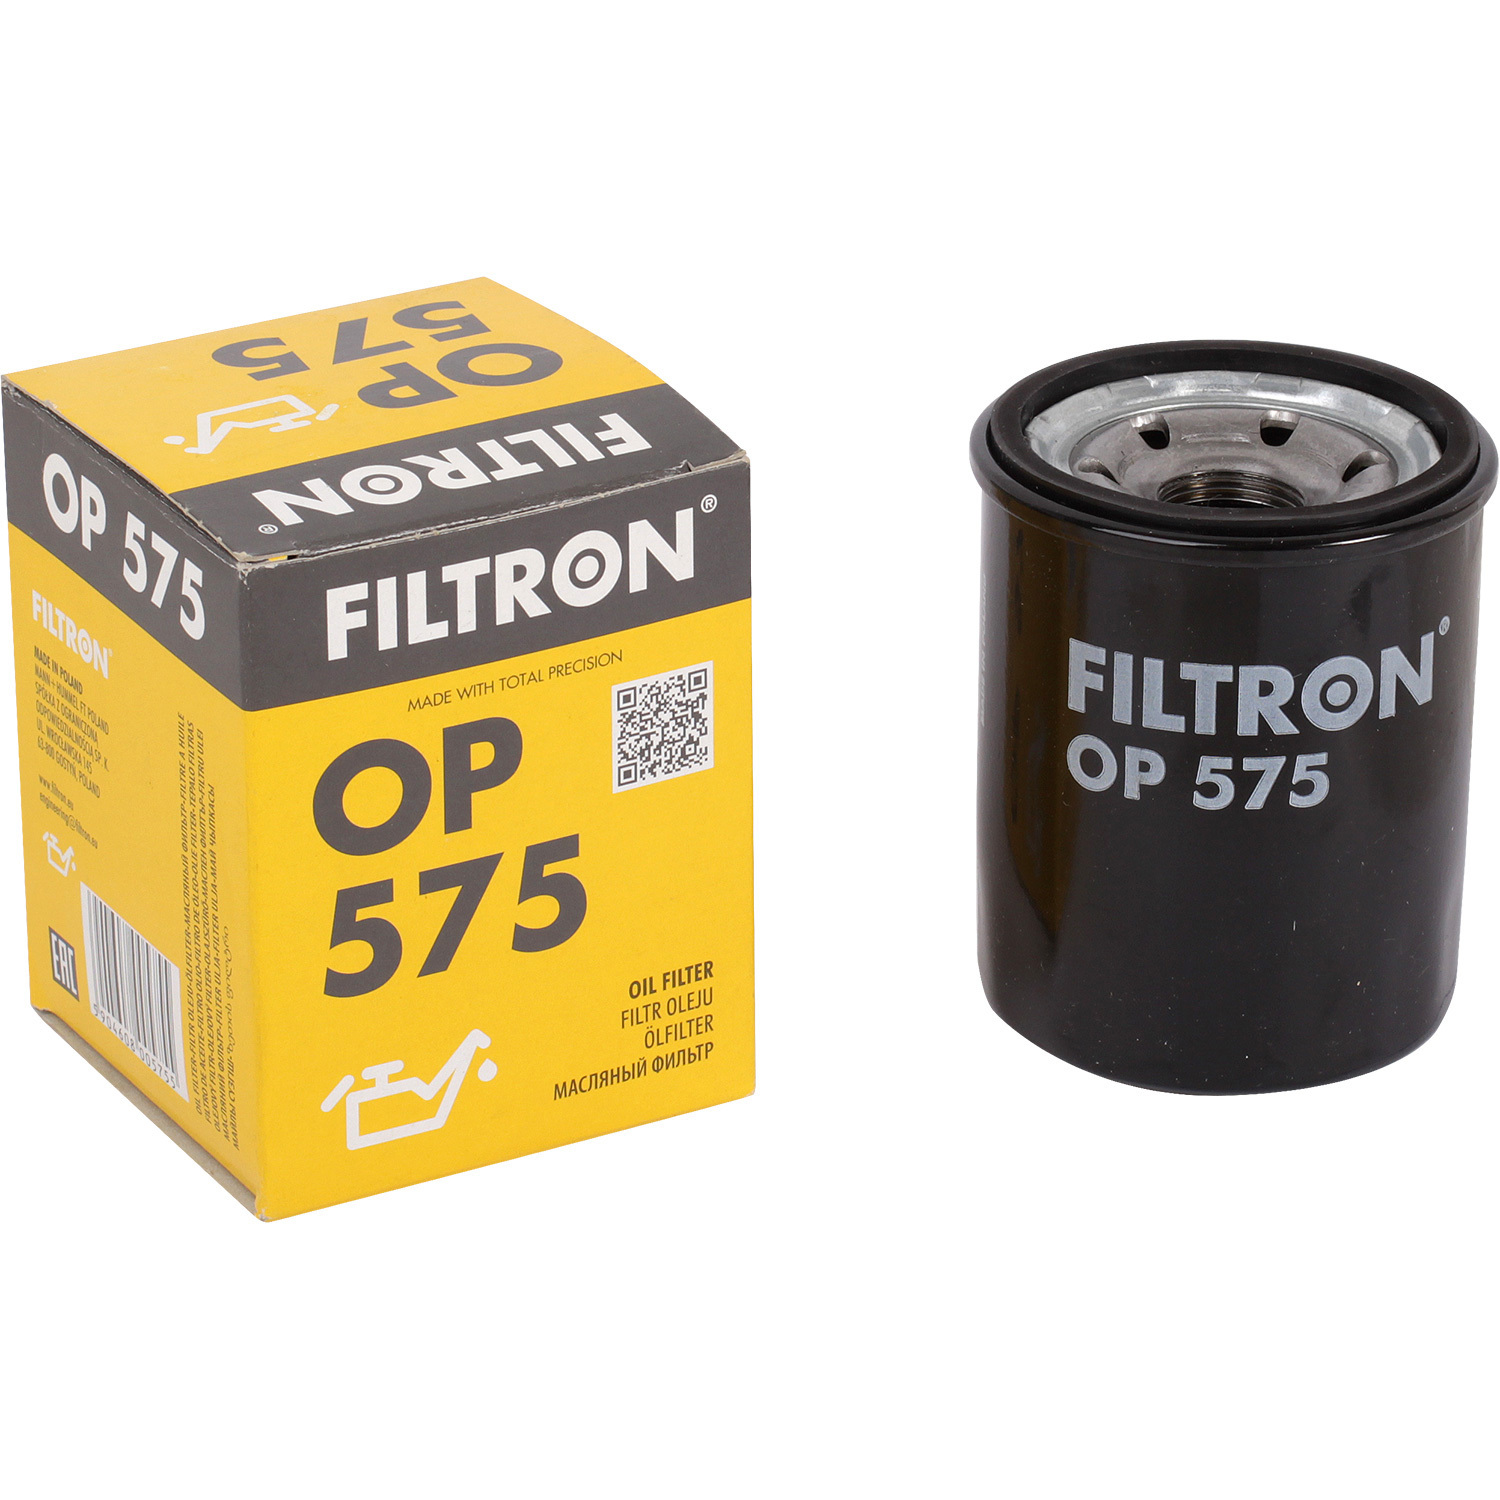 фильтры filtron фильтр масляный filtron op5452 Фильтры Filtron Фильтр масляный Filtron OP575